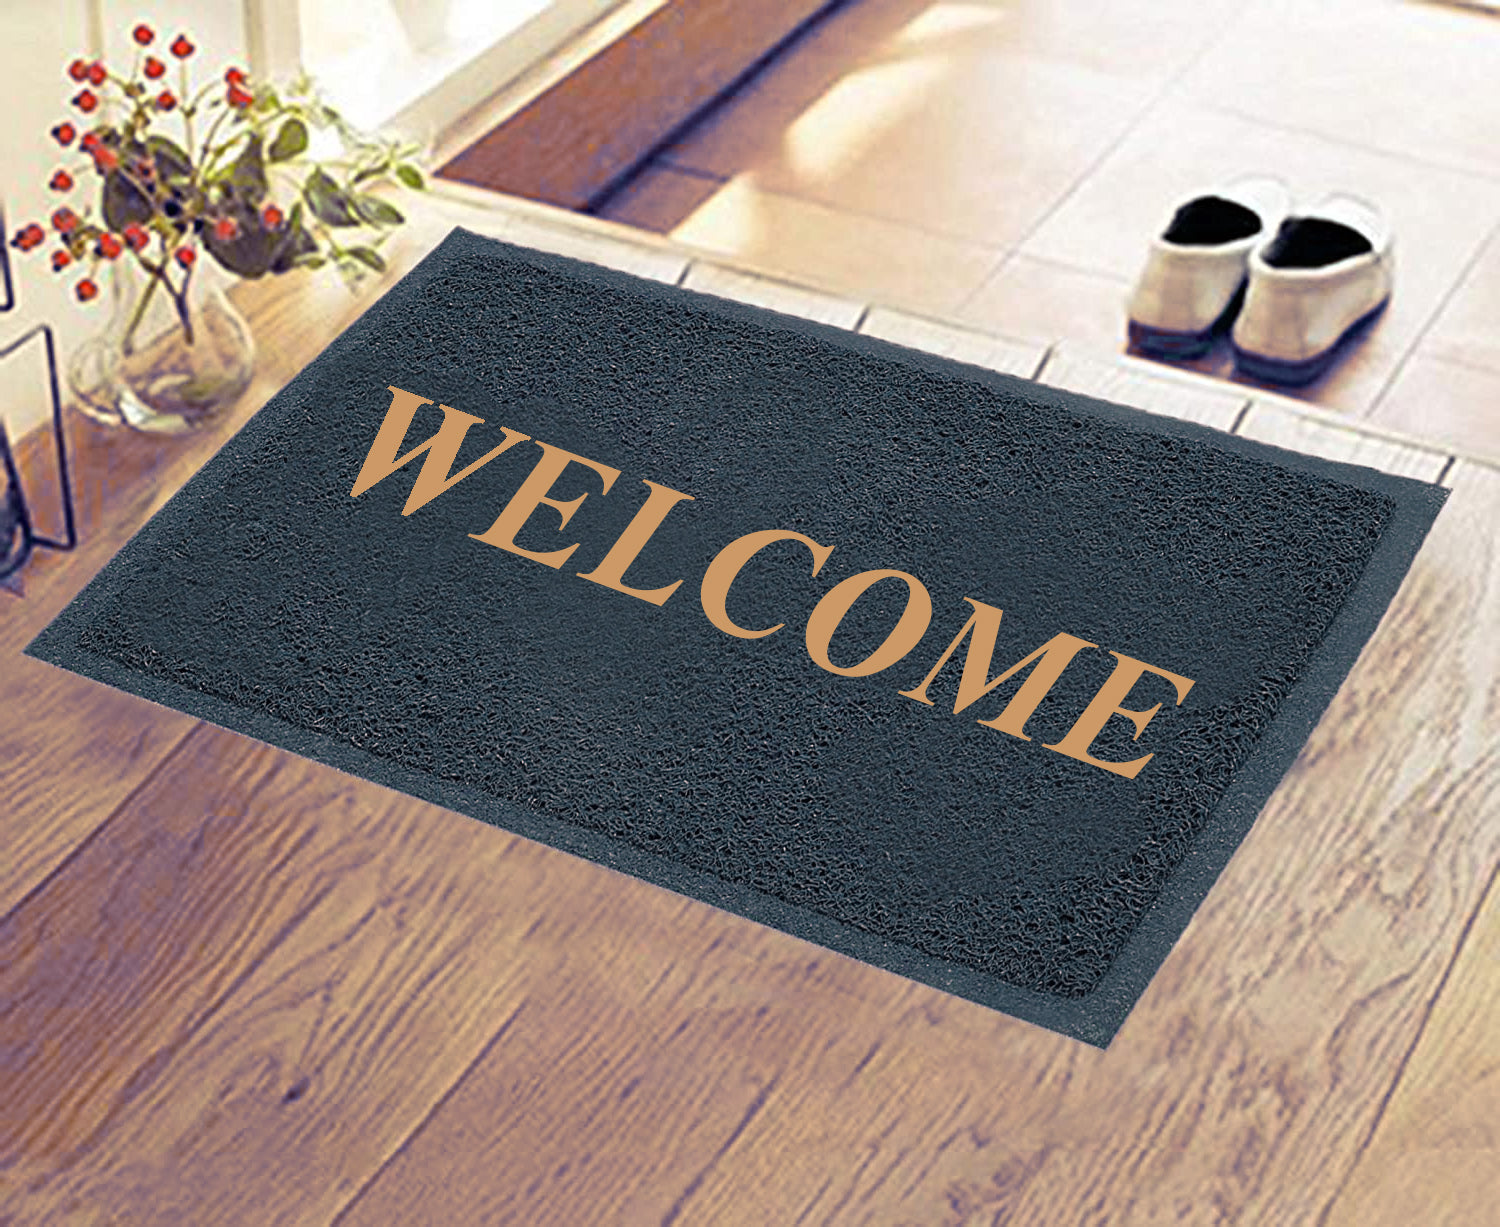 Welcome Door Mat for Home/Work Entrance Outdoor 